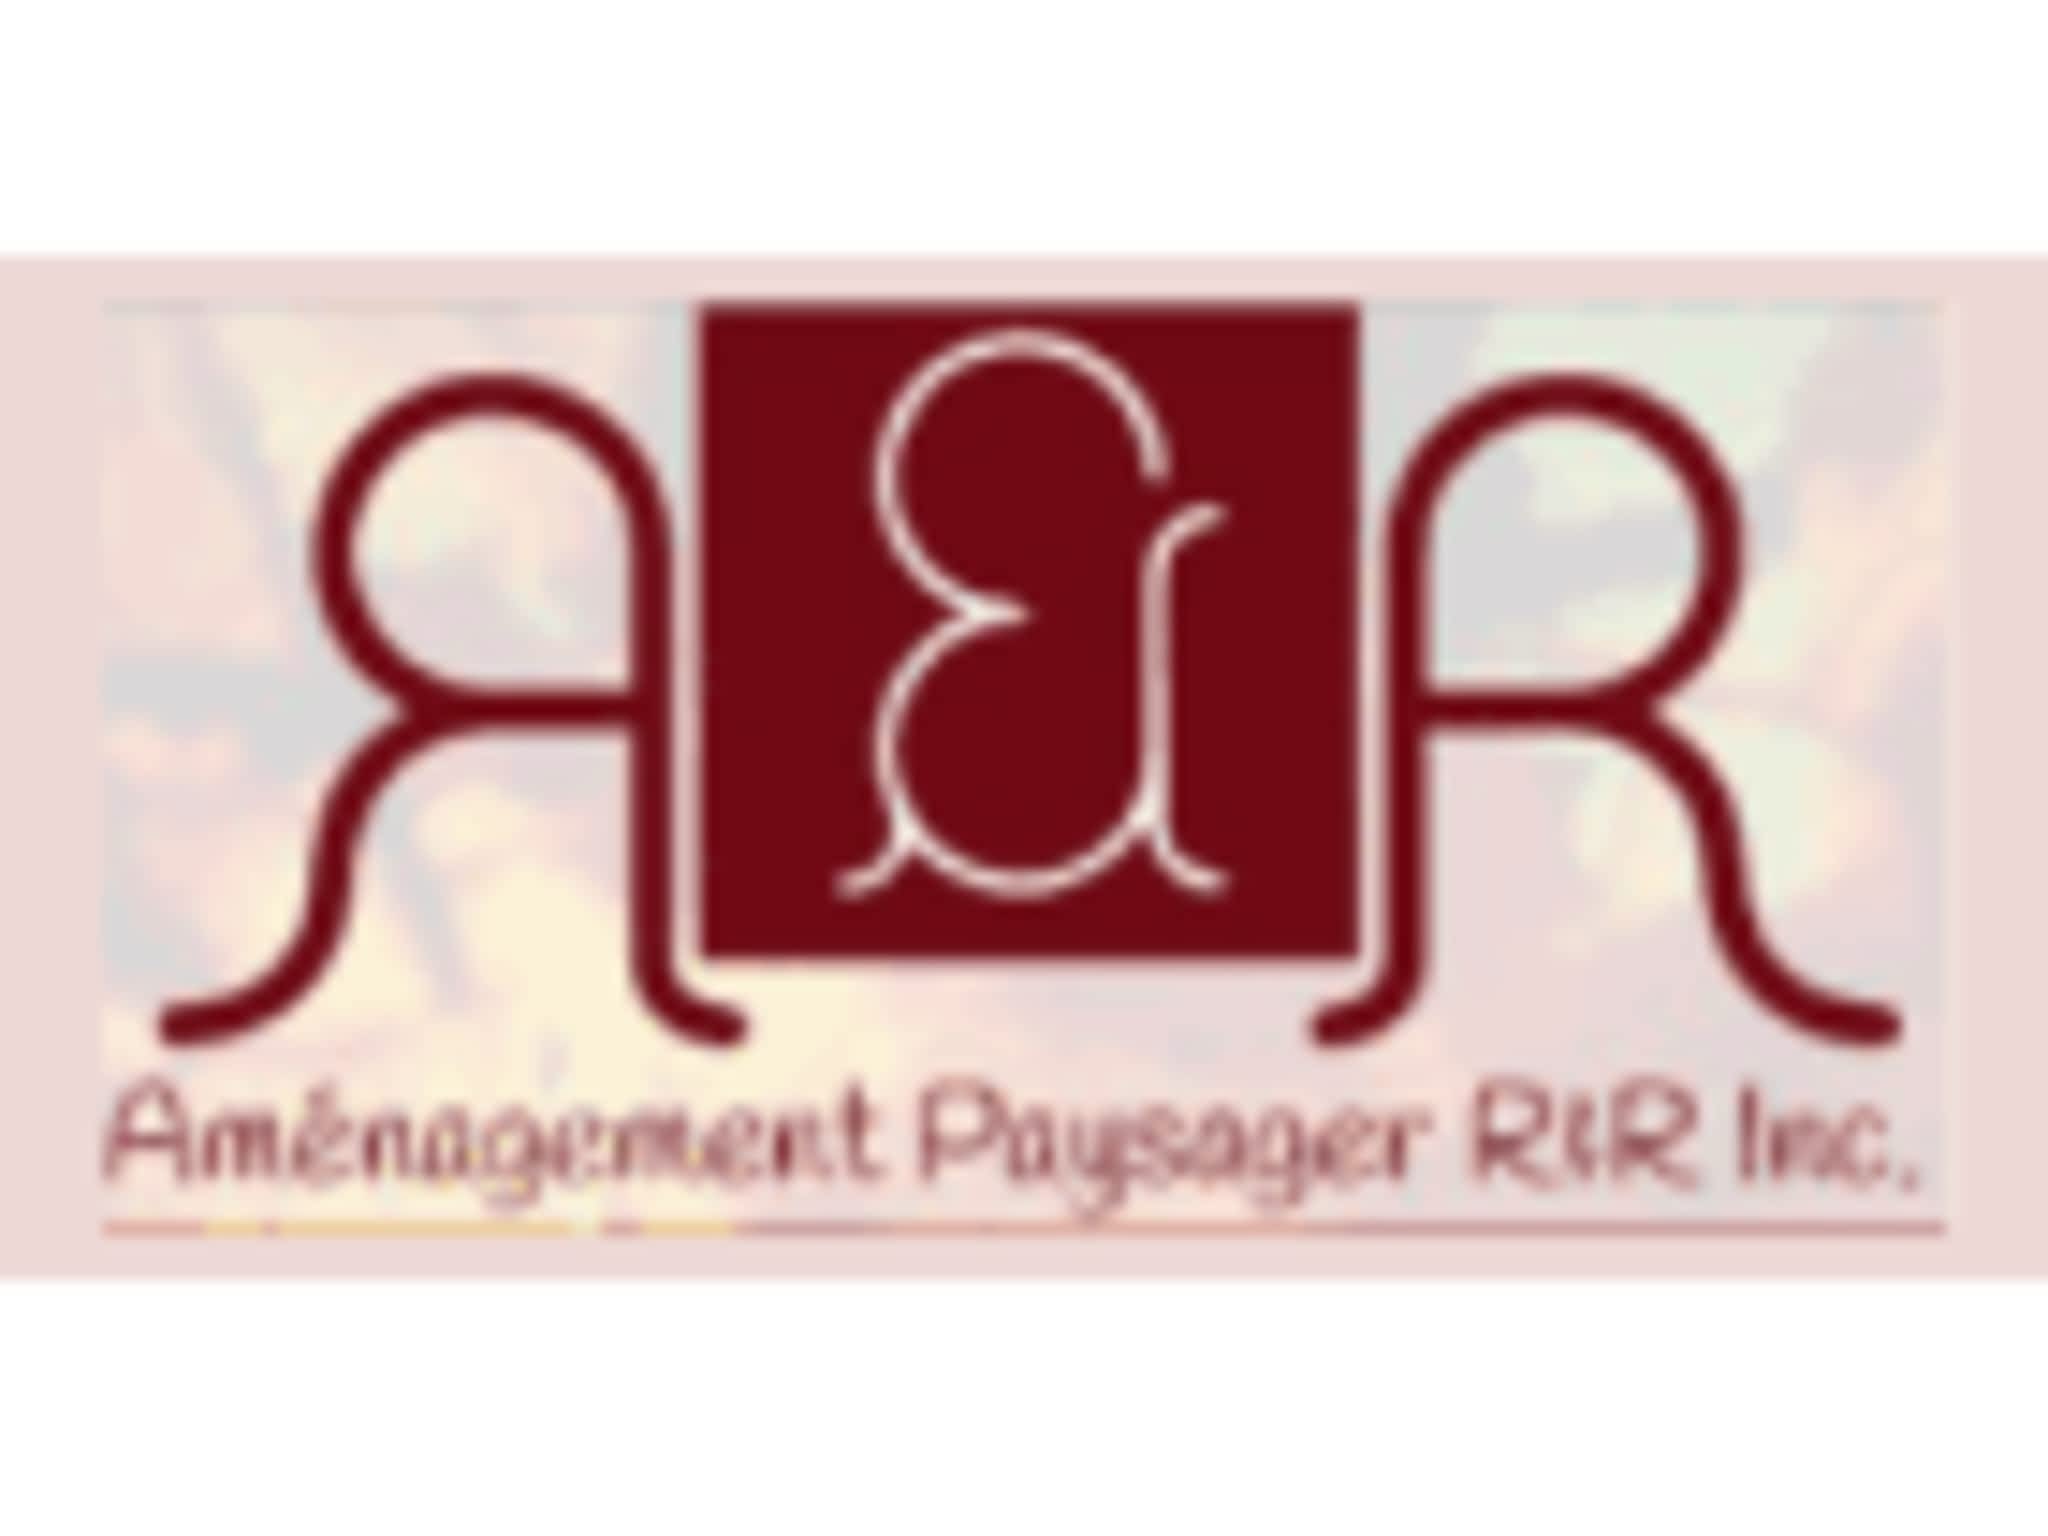 photo Amenagement Paysager R&R Inc